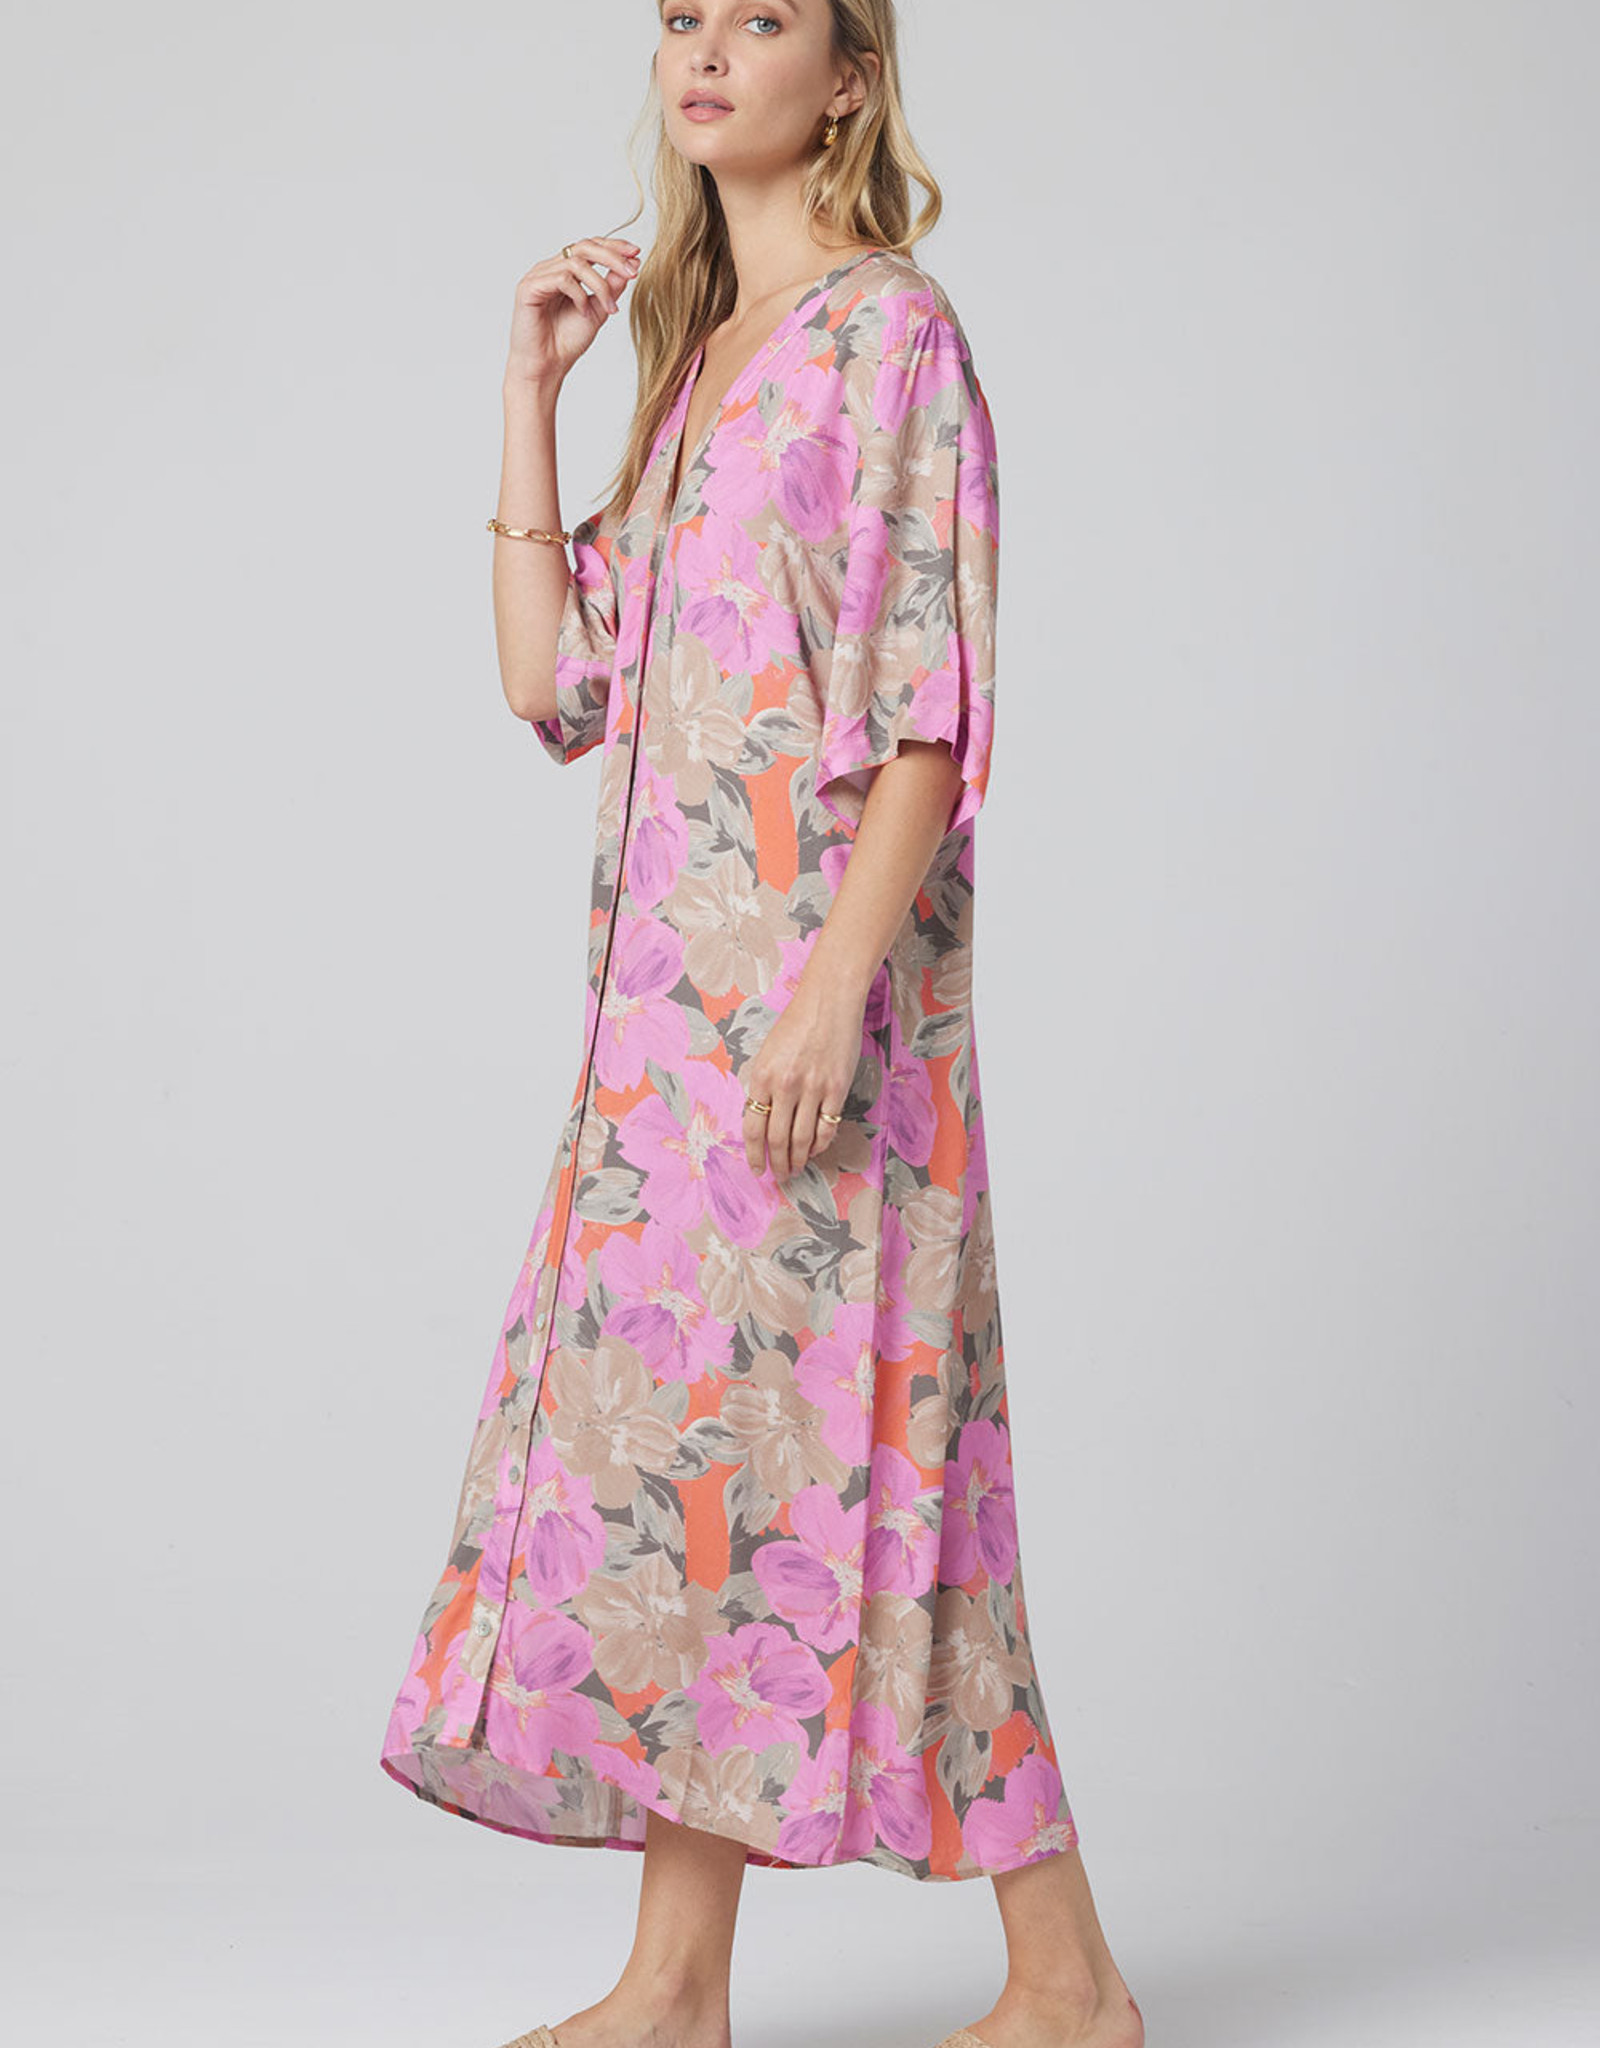 saltwater luxe Floral Kimono/Dress